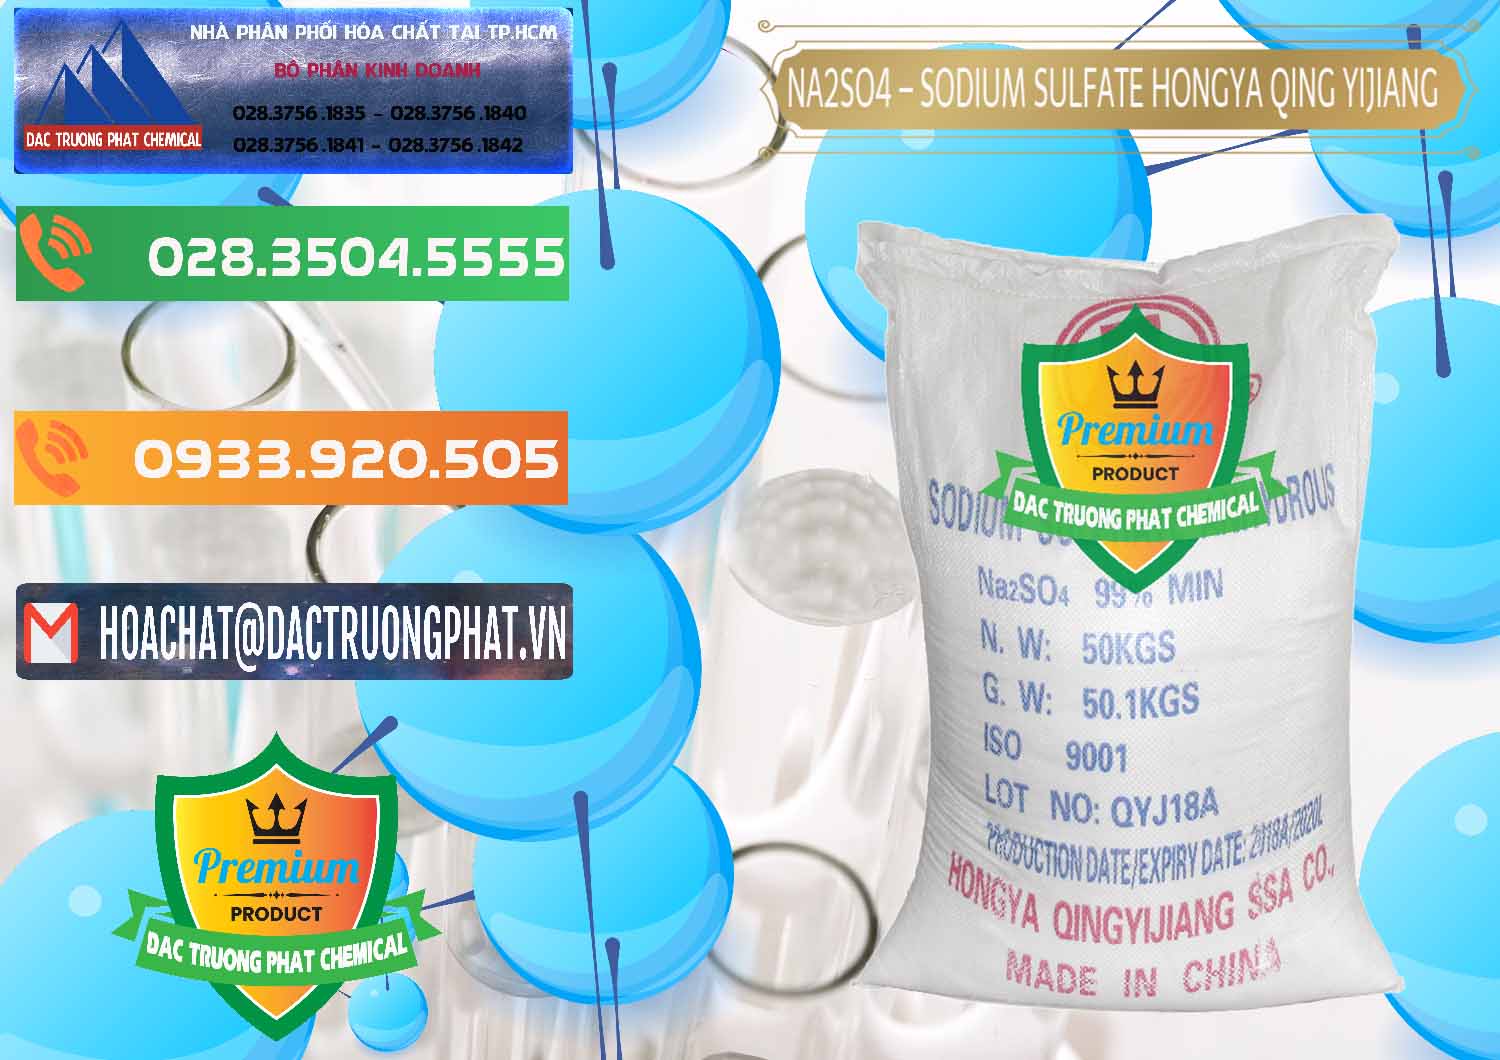 Chuyên bán - phân phối Sodium Sulphate - Muối Sunfat Na2SO4 Logo Cánh Bườm Hongya Qing Yi Trung Quốc China - 0098 - Chuyên cung cấp - phân phối hóa chất tại TP.HCM - hoachatxulynuoc.com.vn